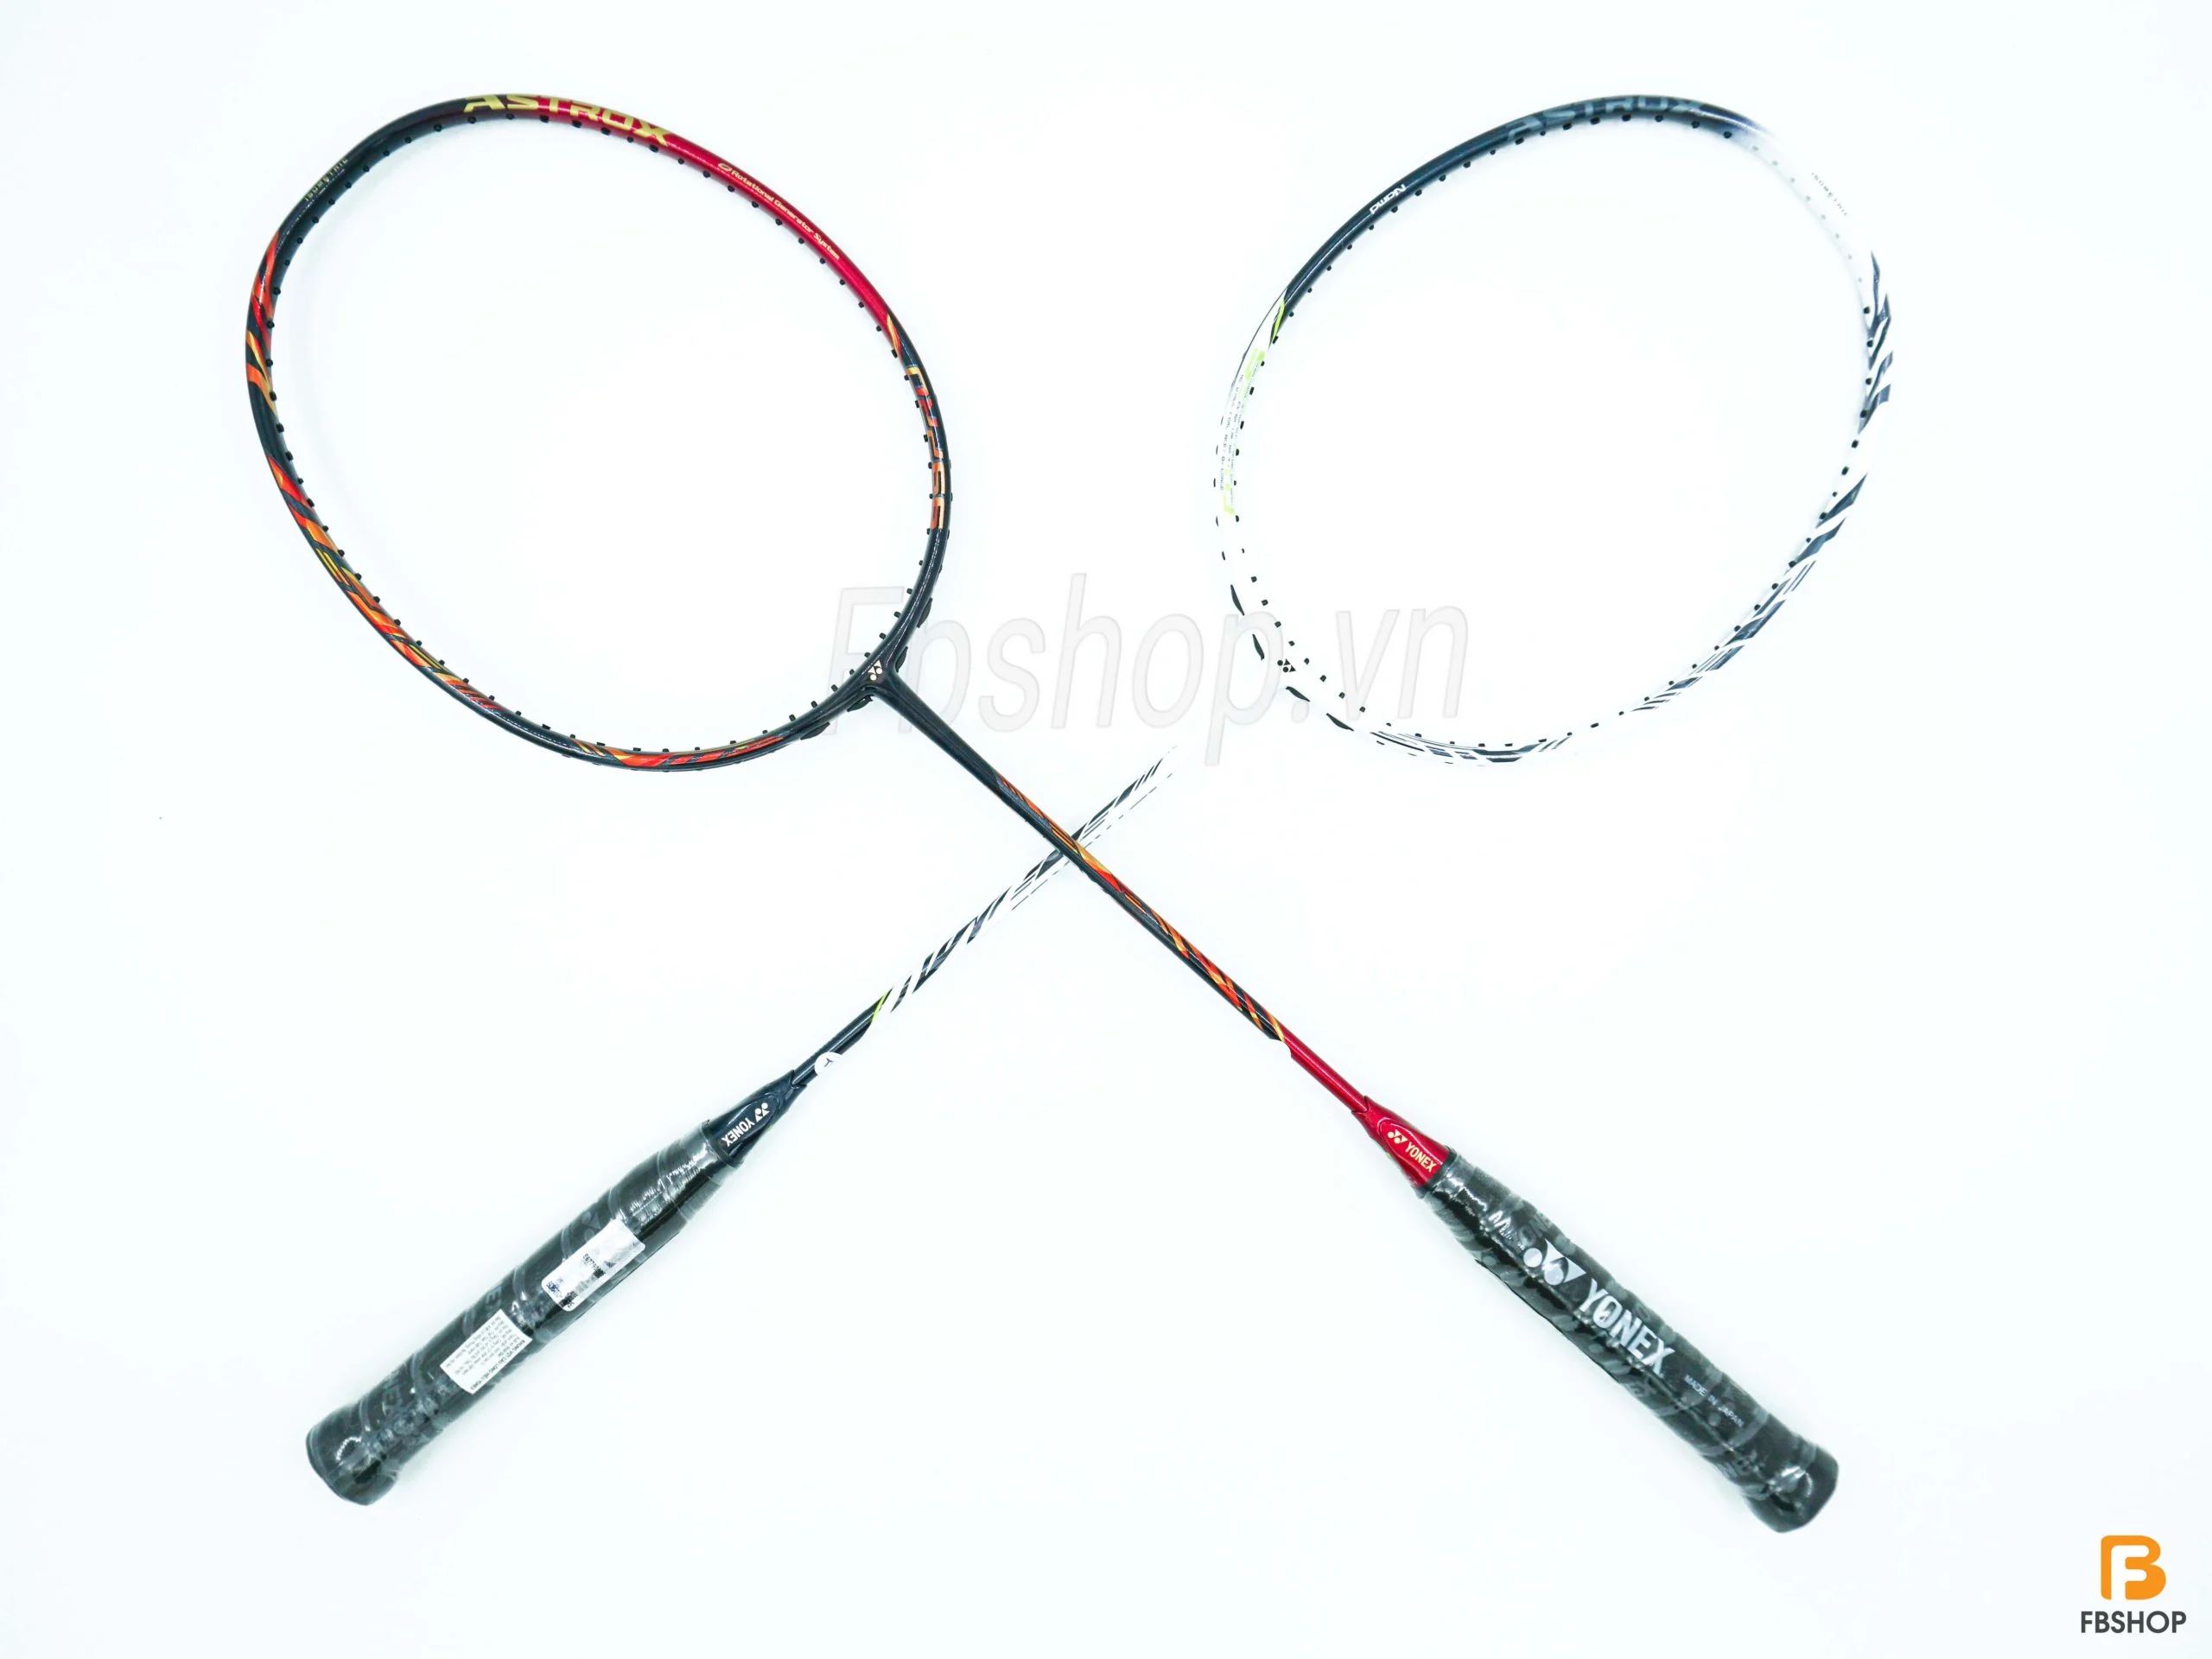 Giới thiệu vợt cầu lông Yonex Astrox 99 Pro